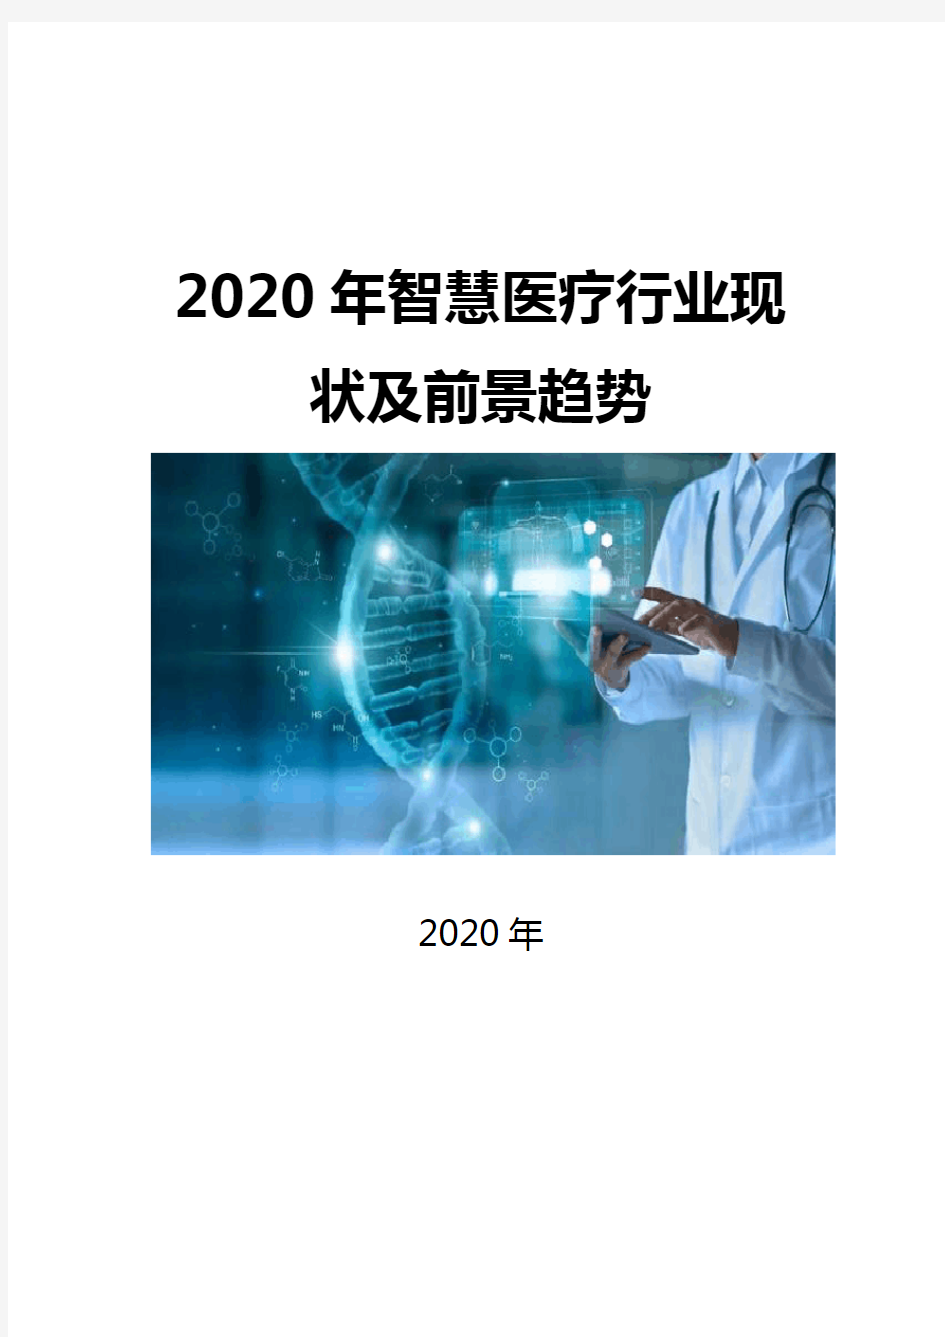 2020智慧医疗行业现状及前景趋势